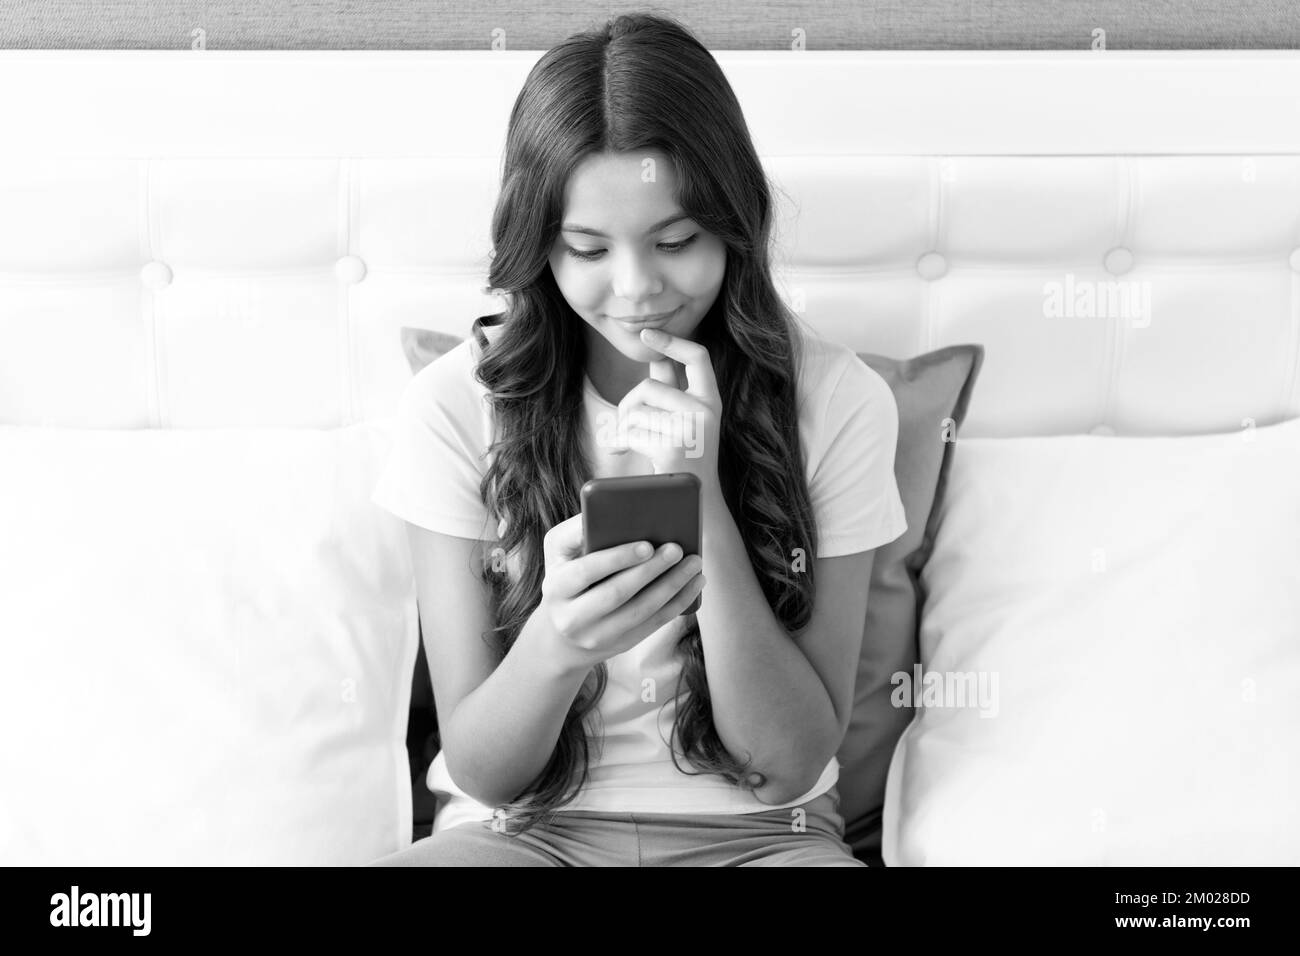 Une fille heureuse sourit en discutant sur un téléphone mobile tout en étant assise sur le lit, en discutant. Banque D'Images